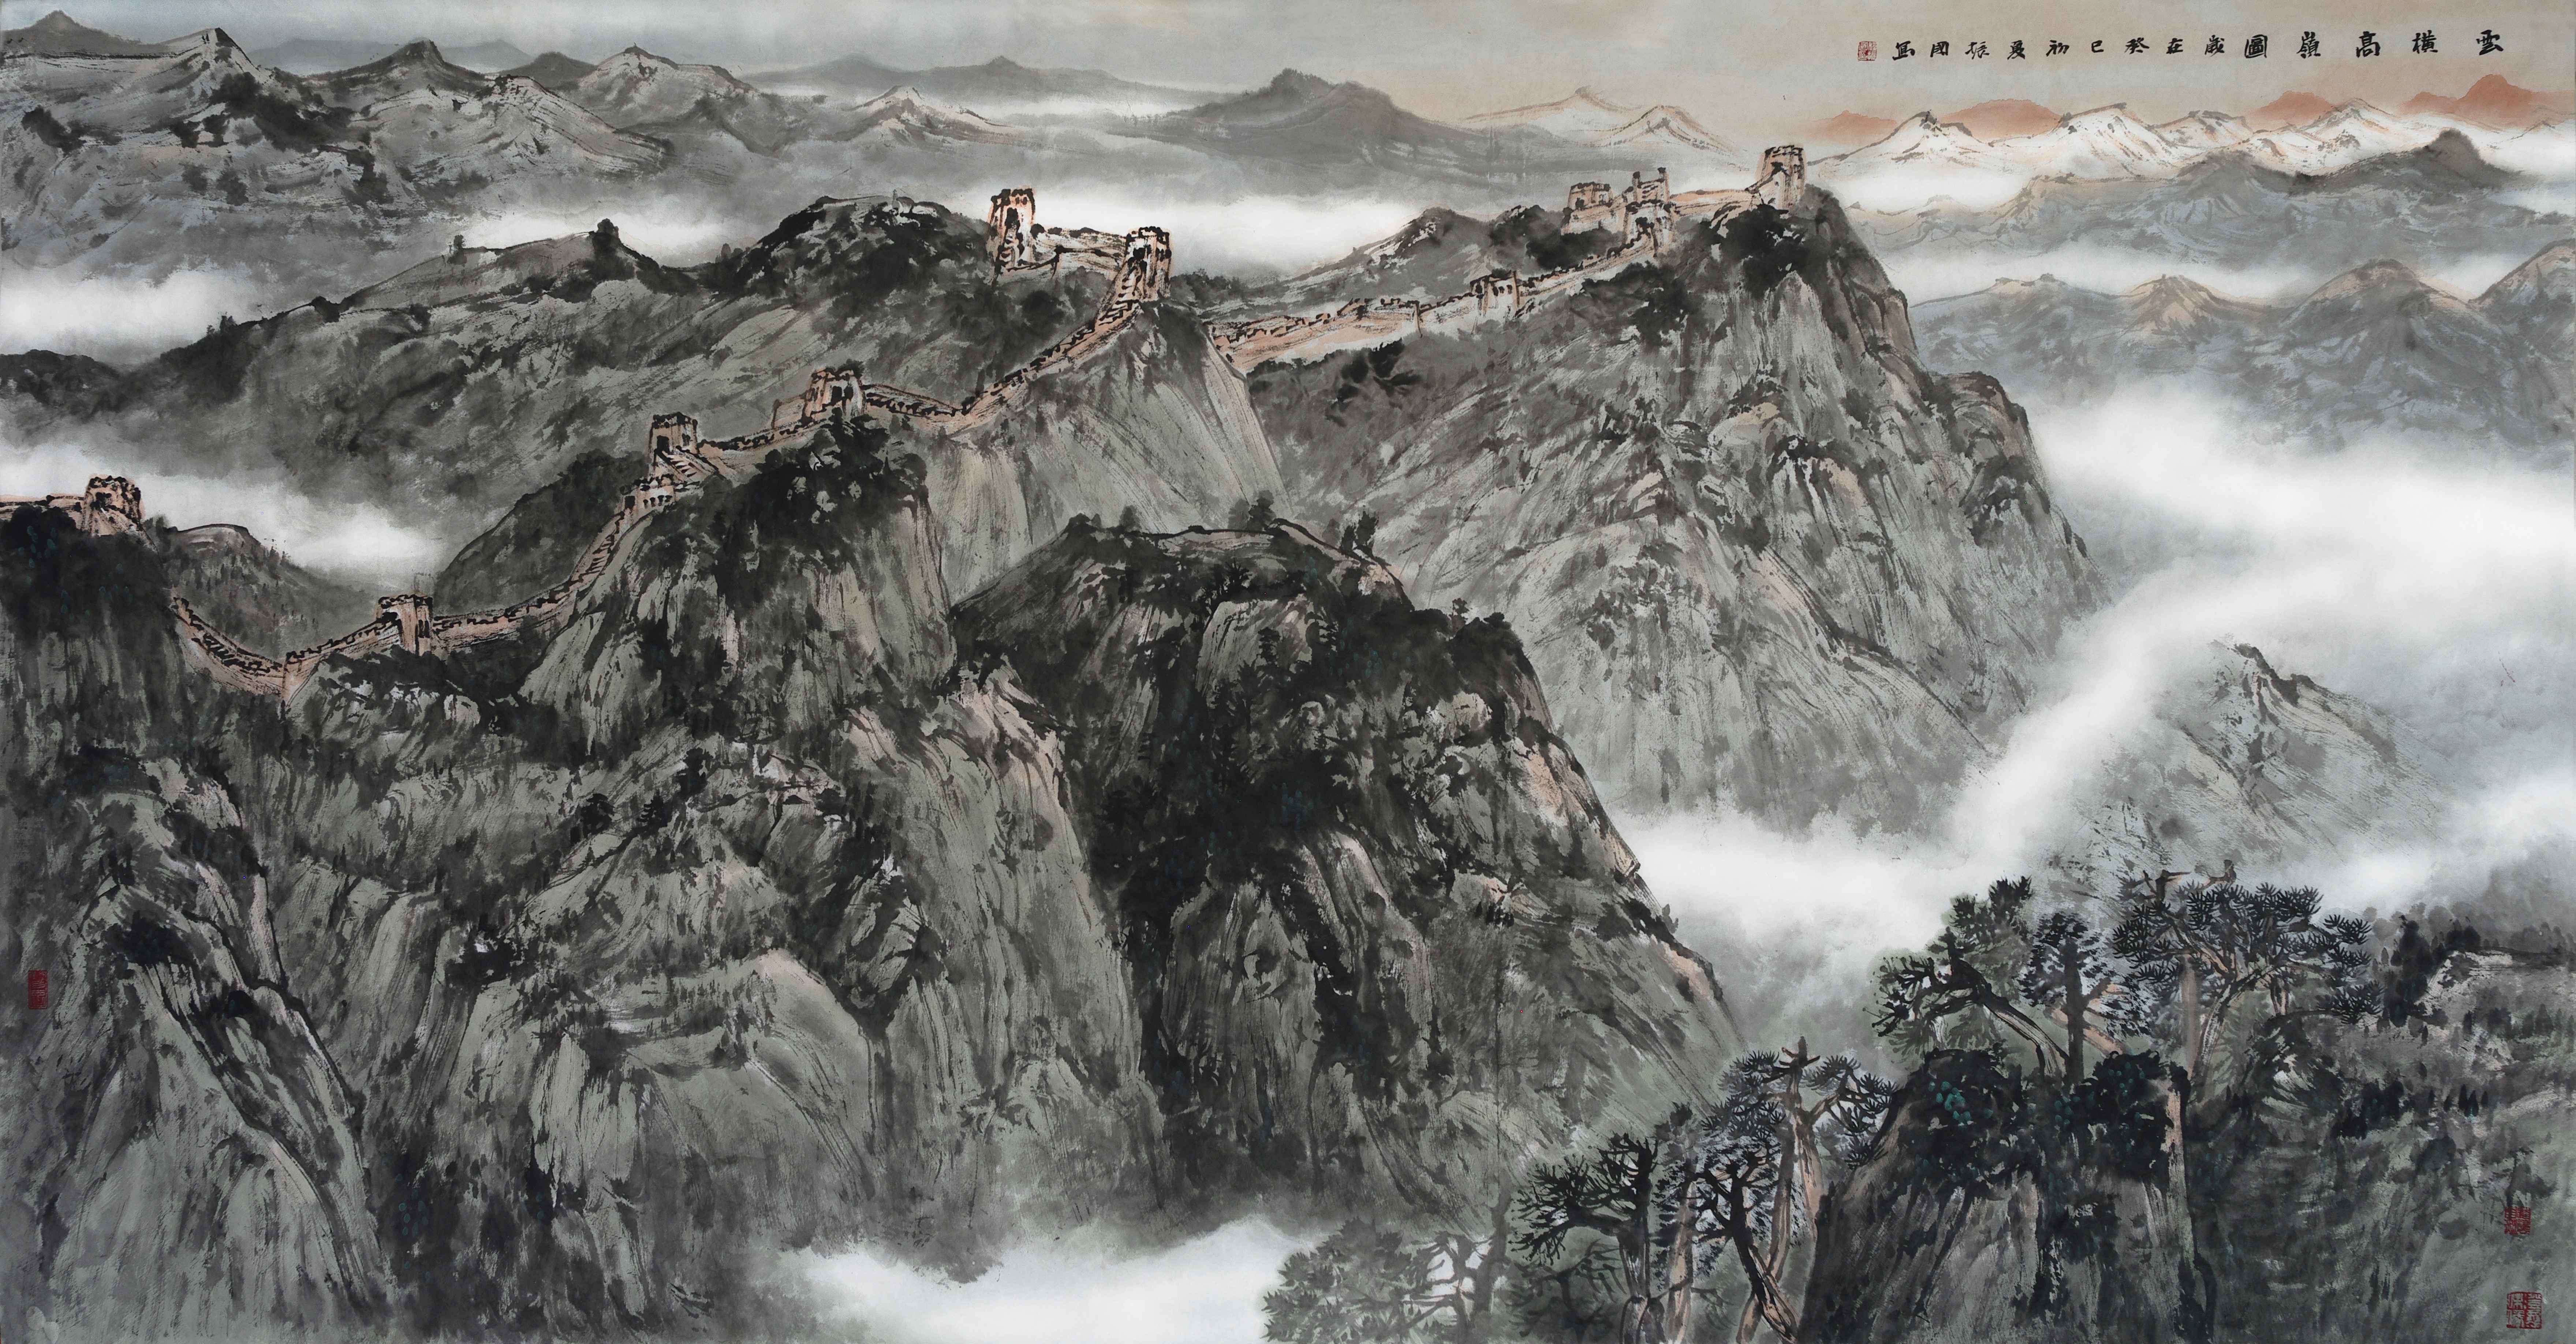 程振国笔下壮美的山水画卷是一张张文化鲜明的外交名片